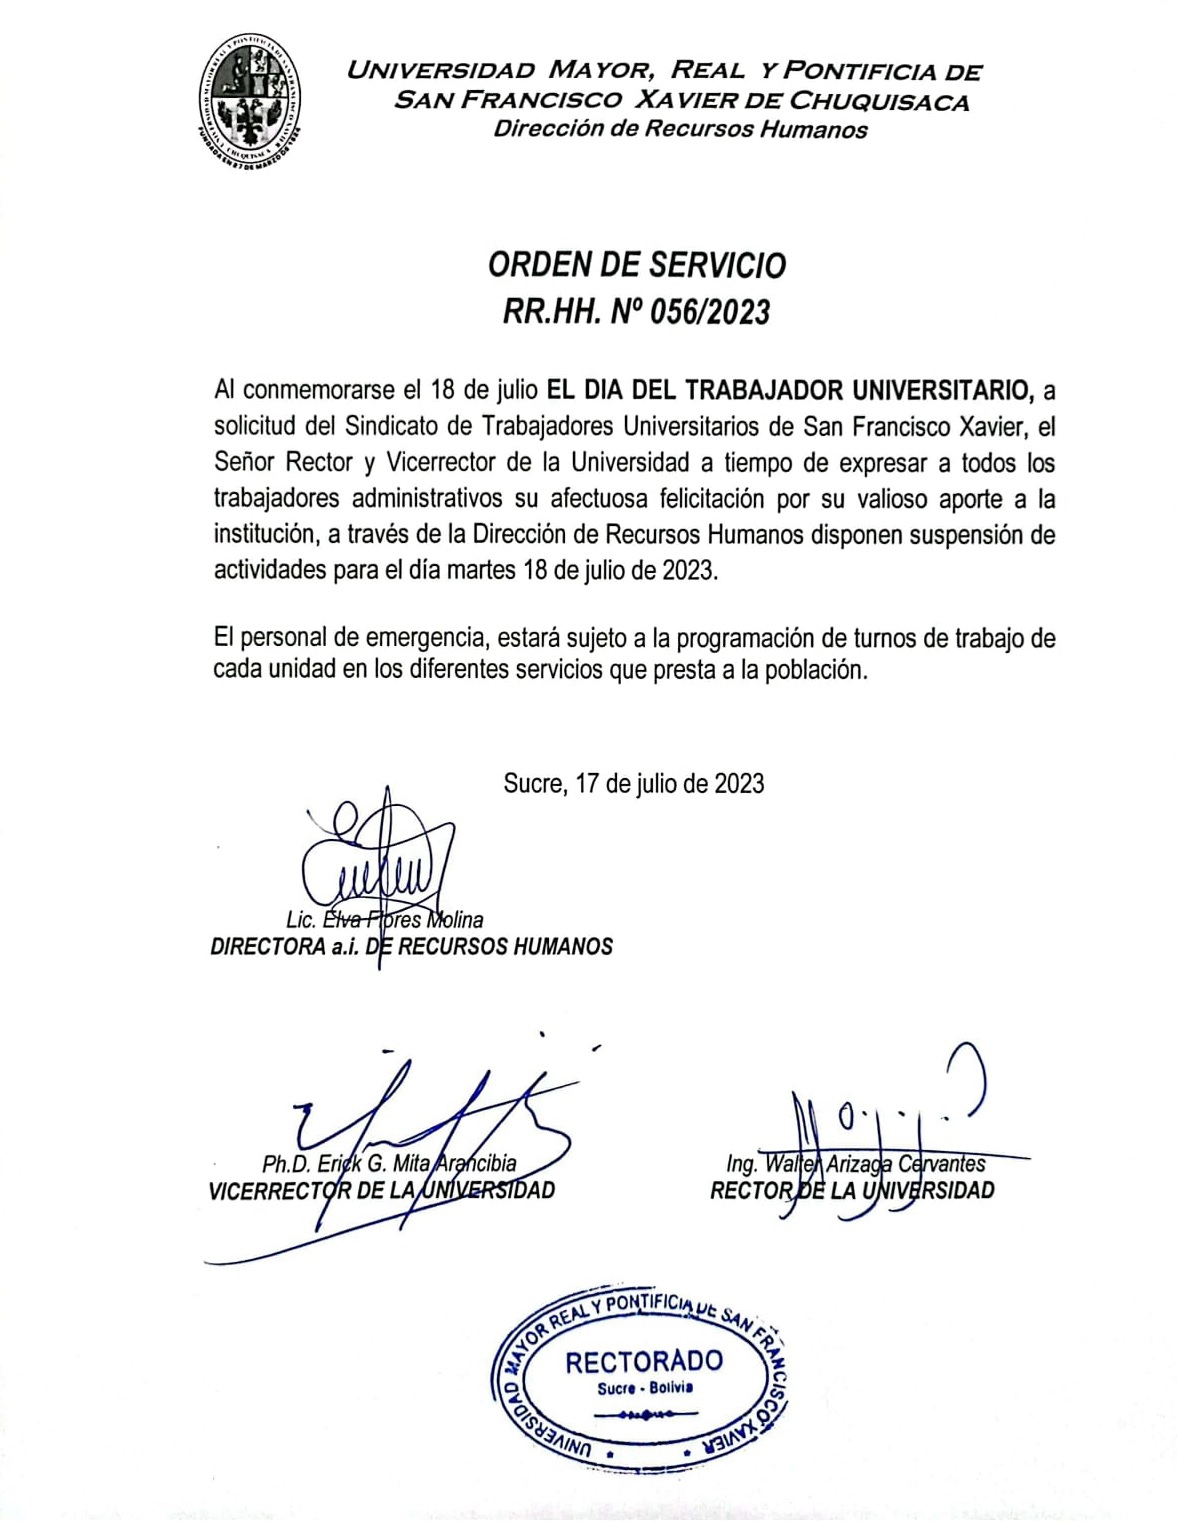 ORDEN DE SERVICIO RR.HH. Nº 056/2023 DÍA DEL TRABAJADOR UNIVERSITARIO.